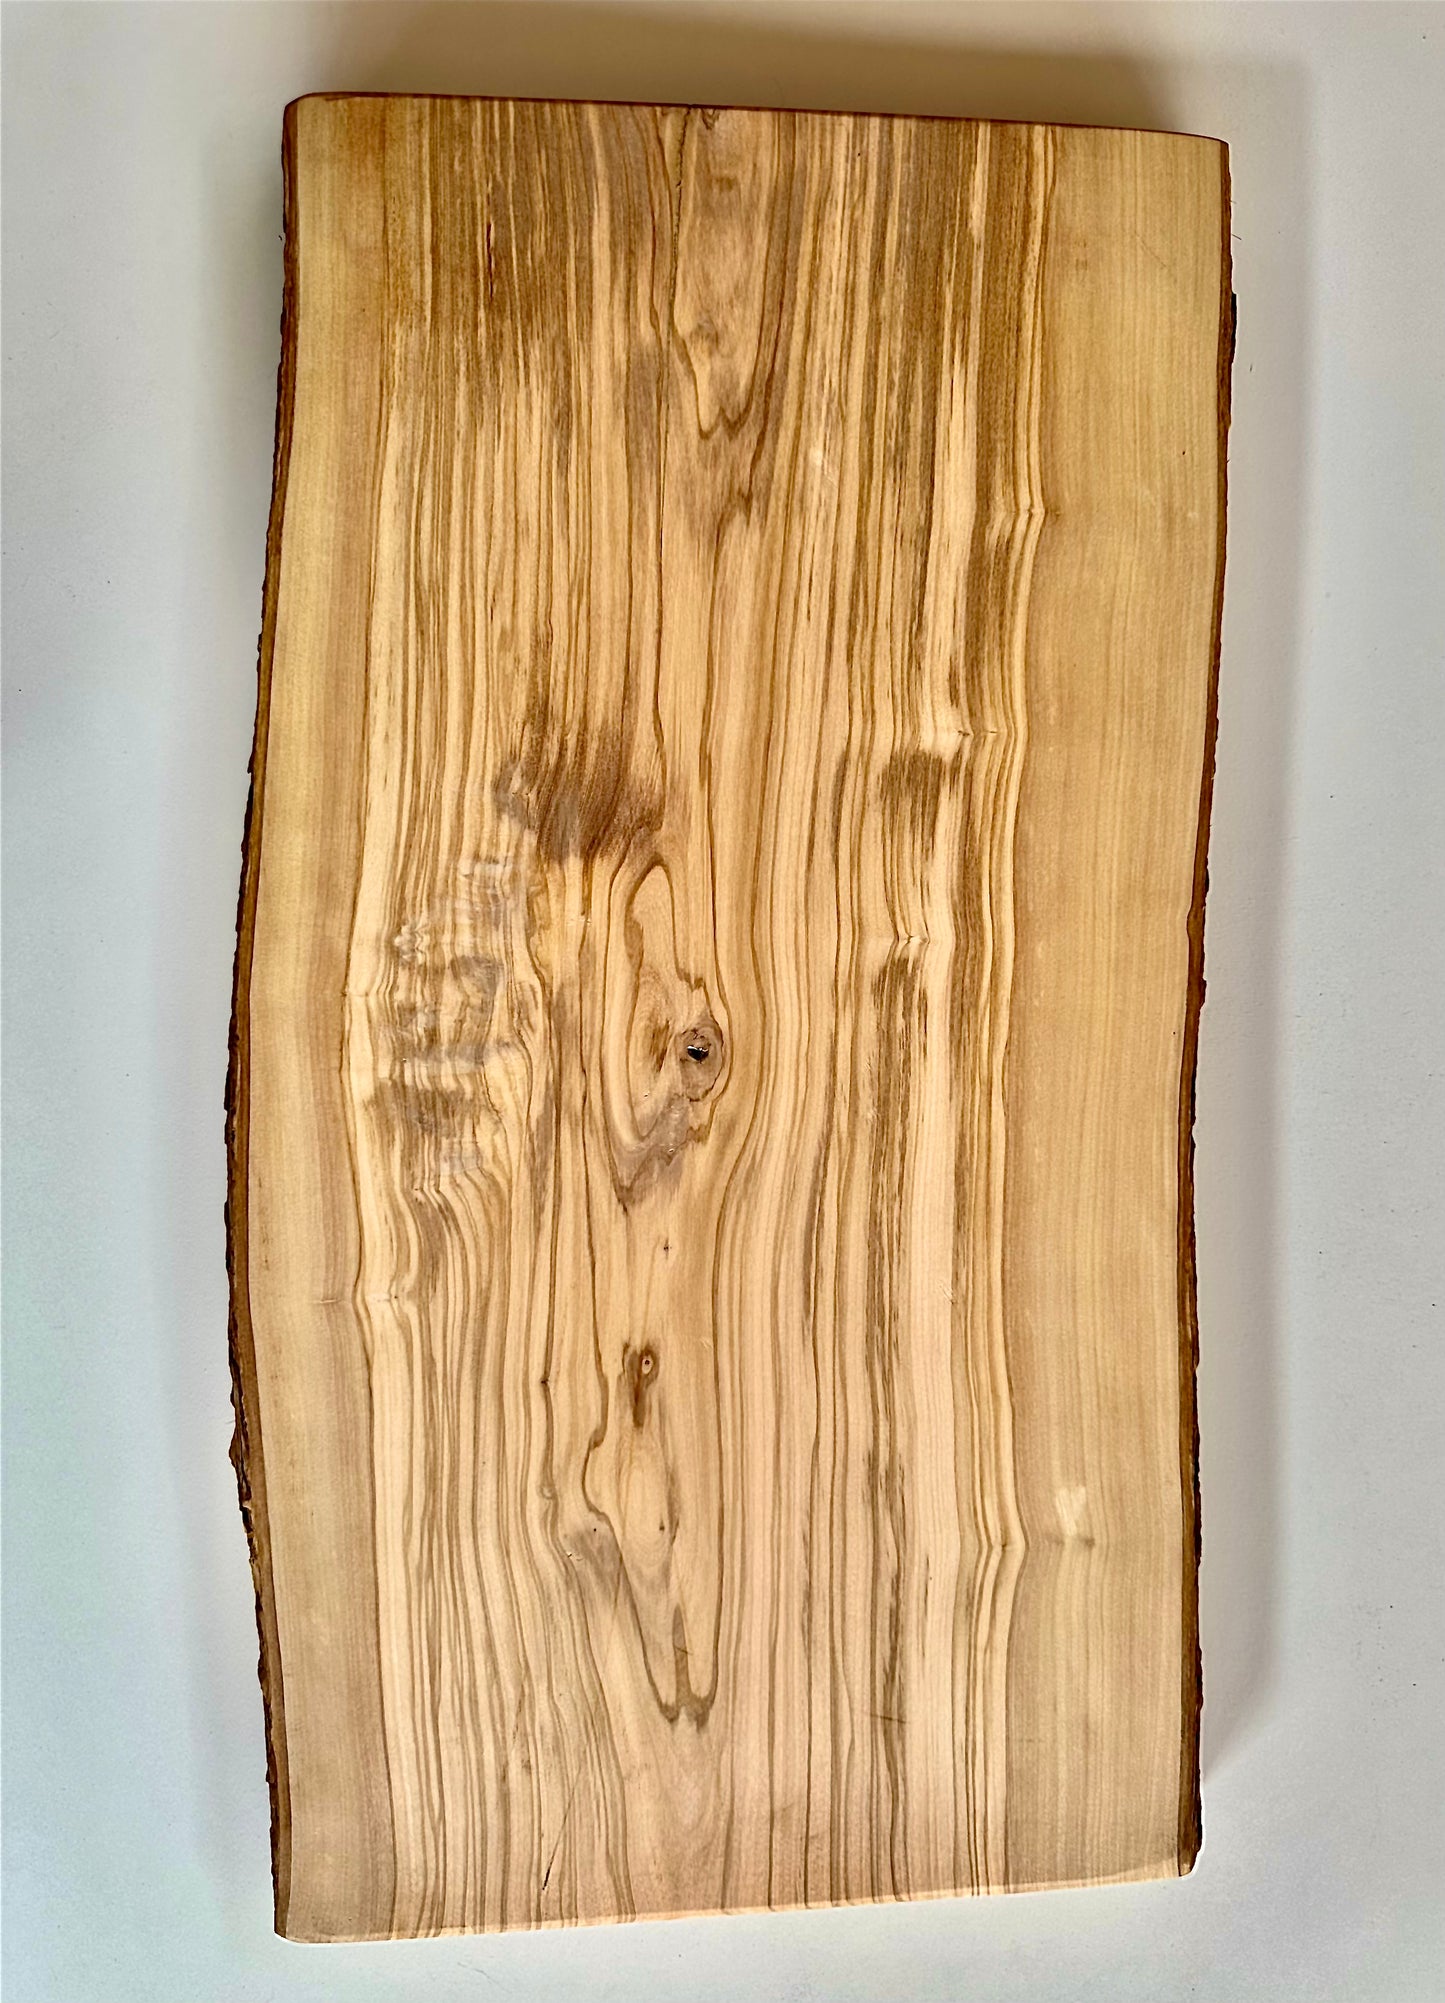 Tagliere Small in legno d'ulivo con corteccia Made in Blasi - Spessore 4,5/5,0 mm